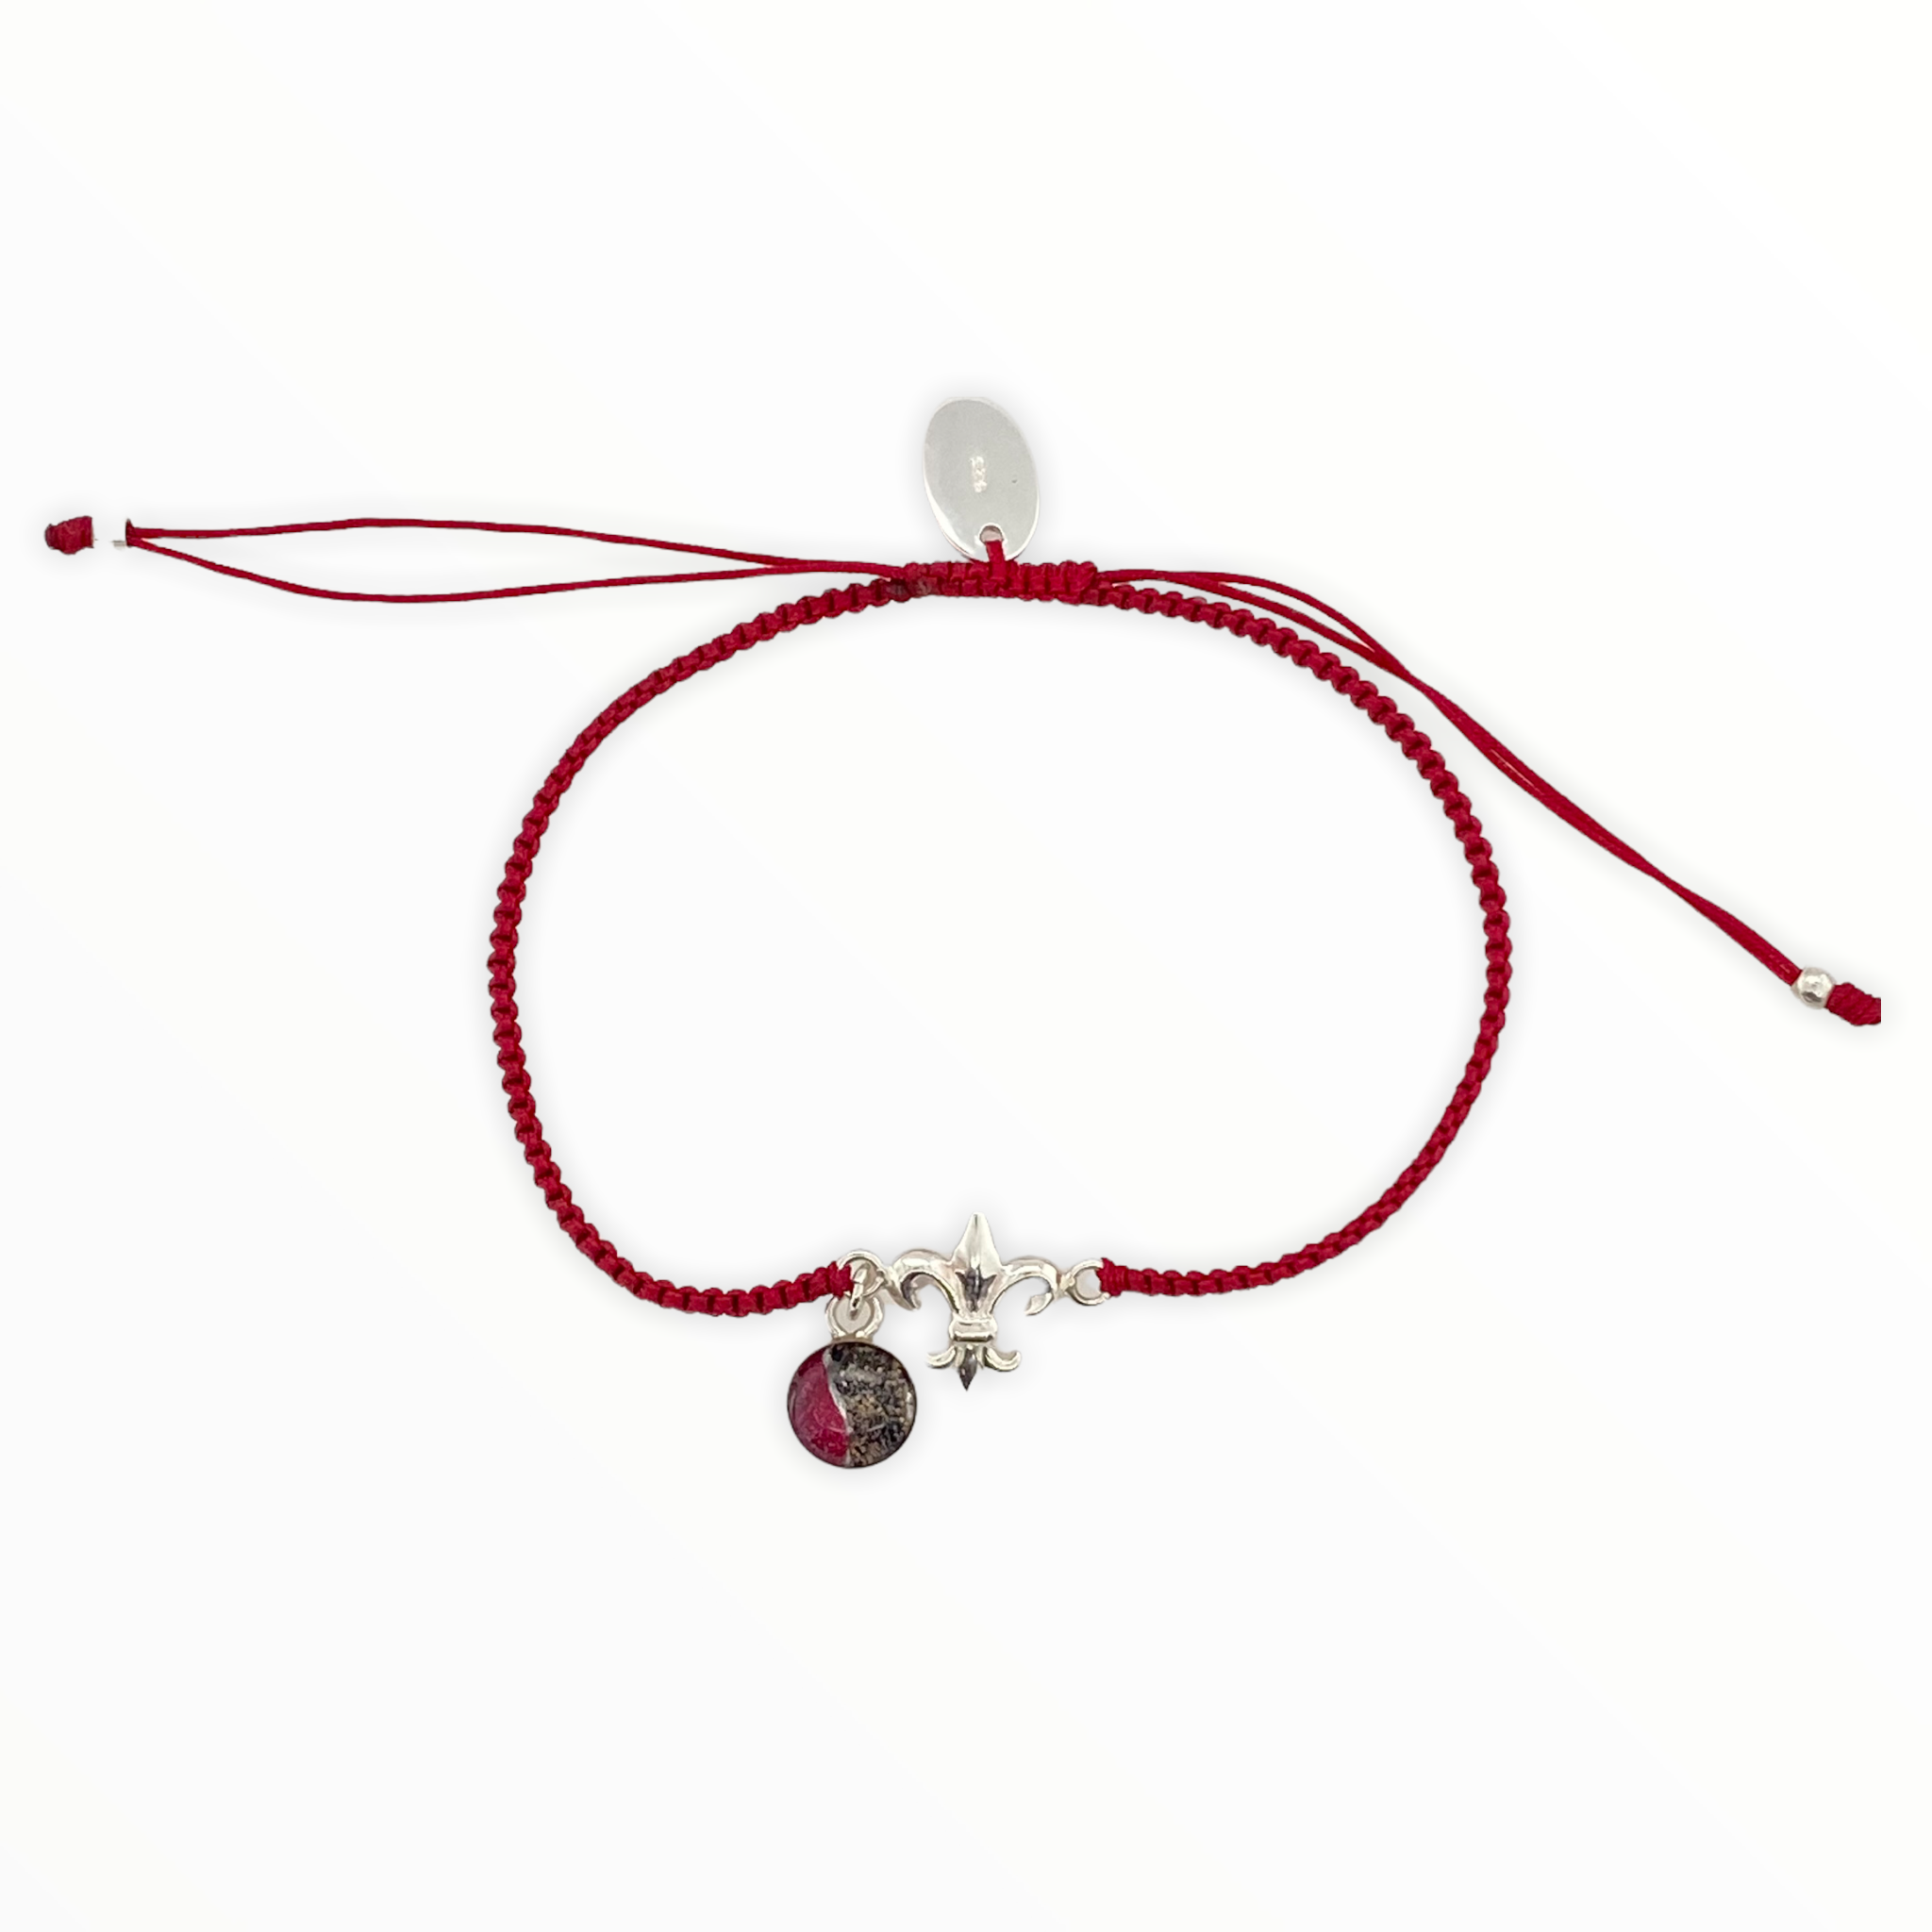 Yamil Jewelry on Instagram: “Yamil silver fleur de lis bracelet +